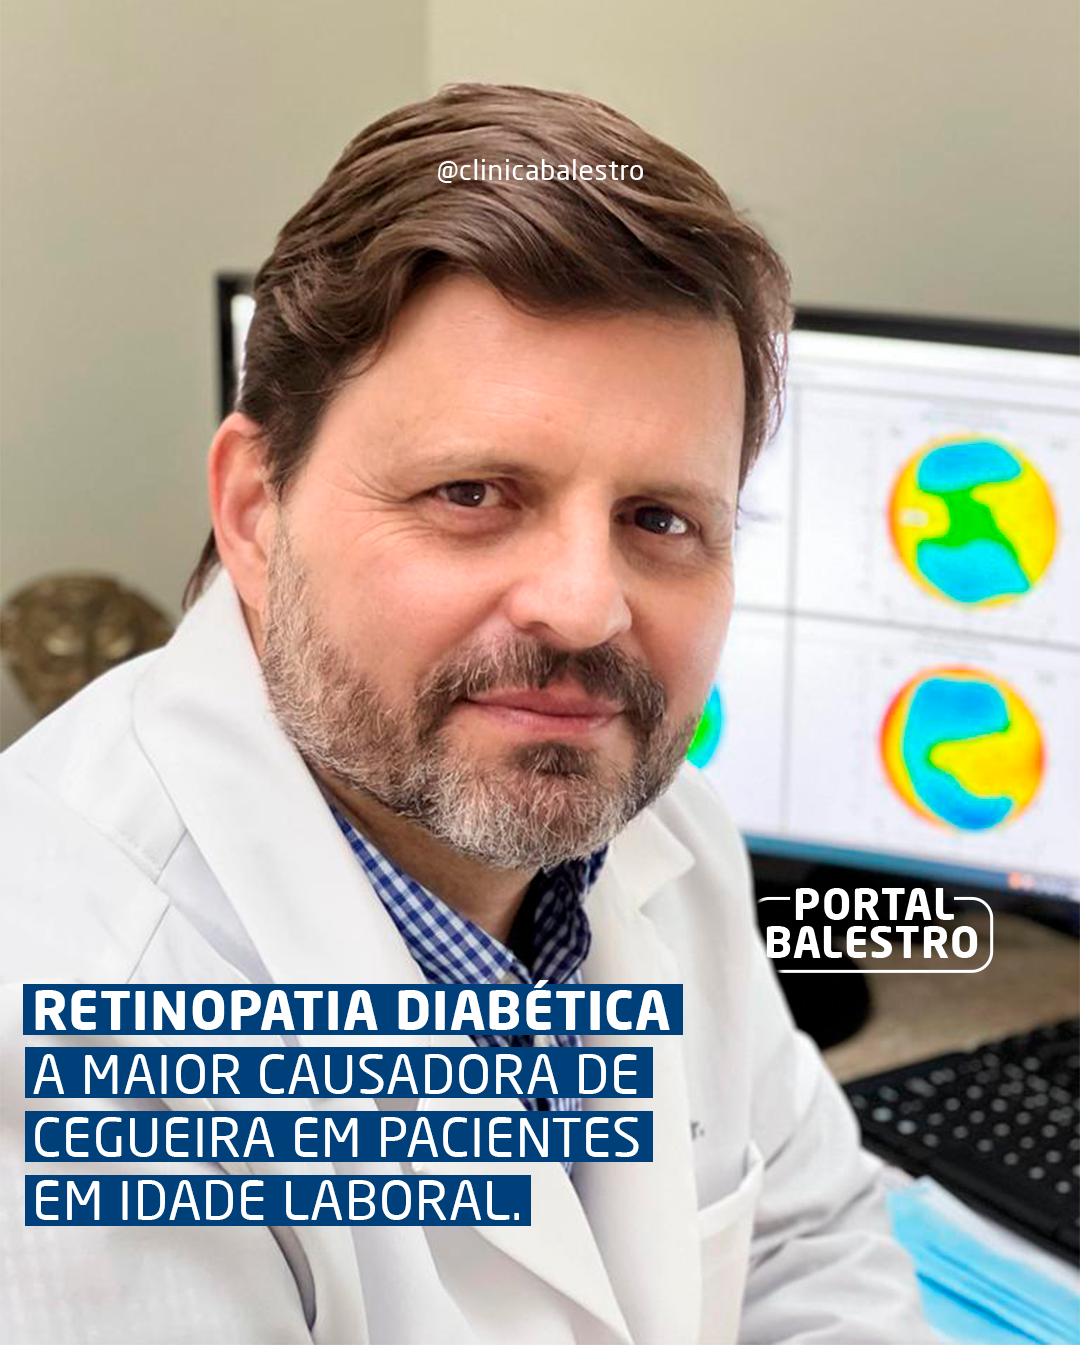 Retinopatia Diabética: a maior causadora de cegueira em pacientes em idade laboral